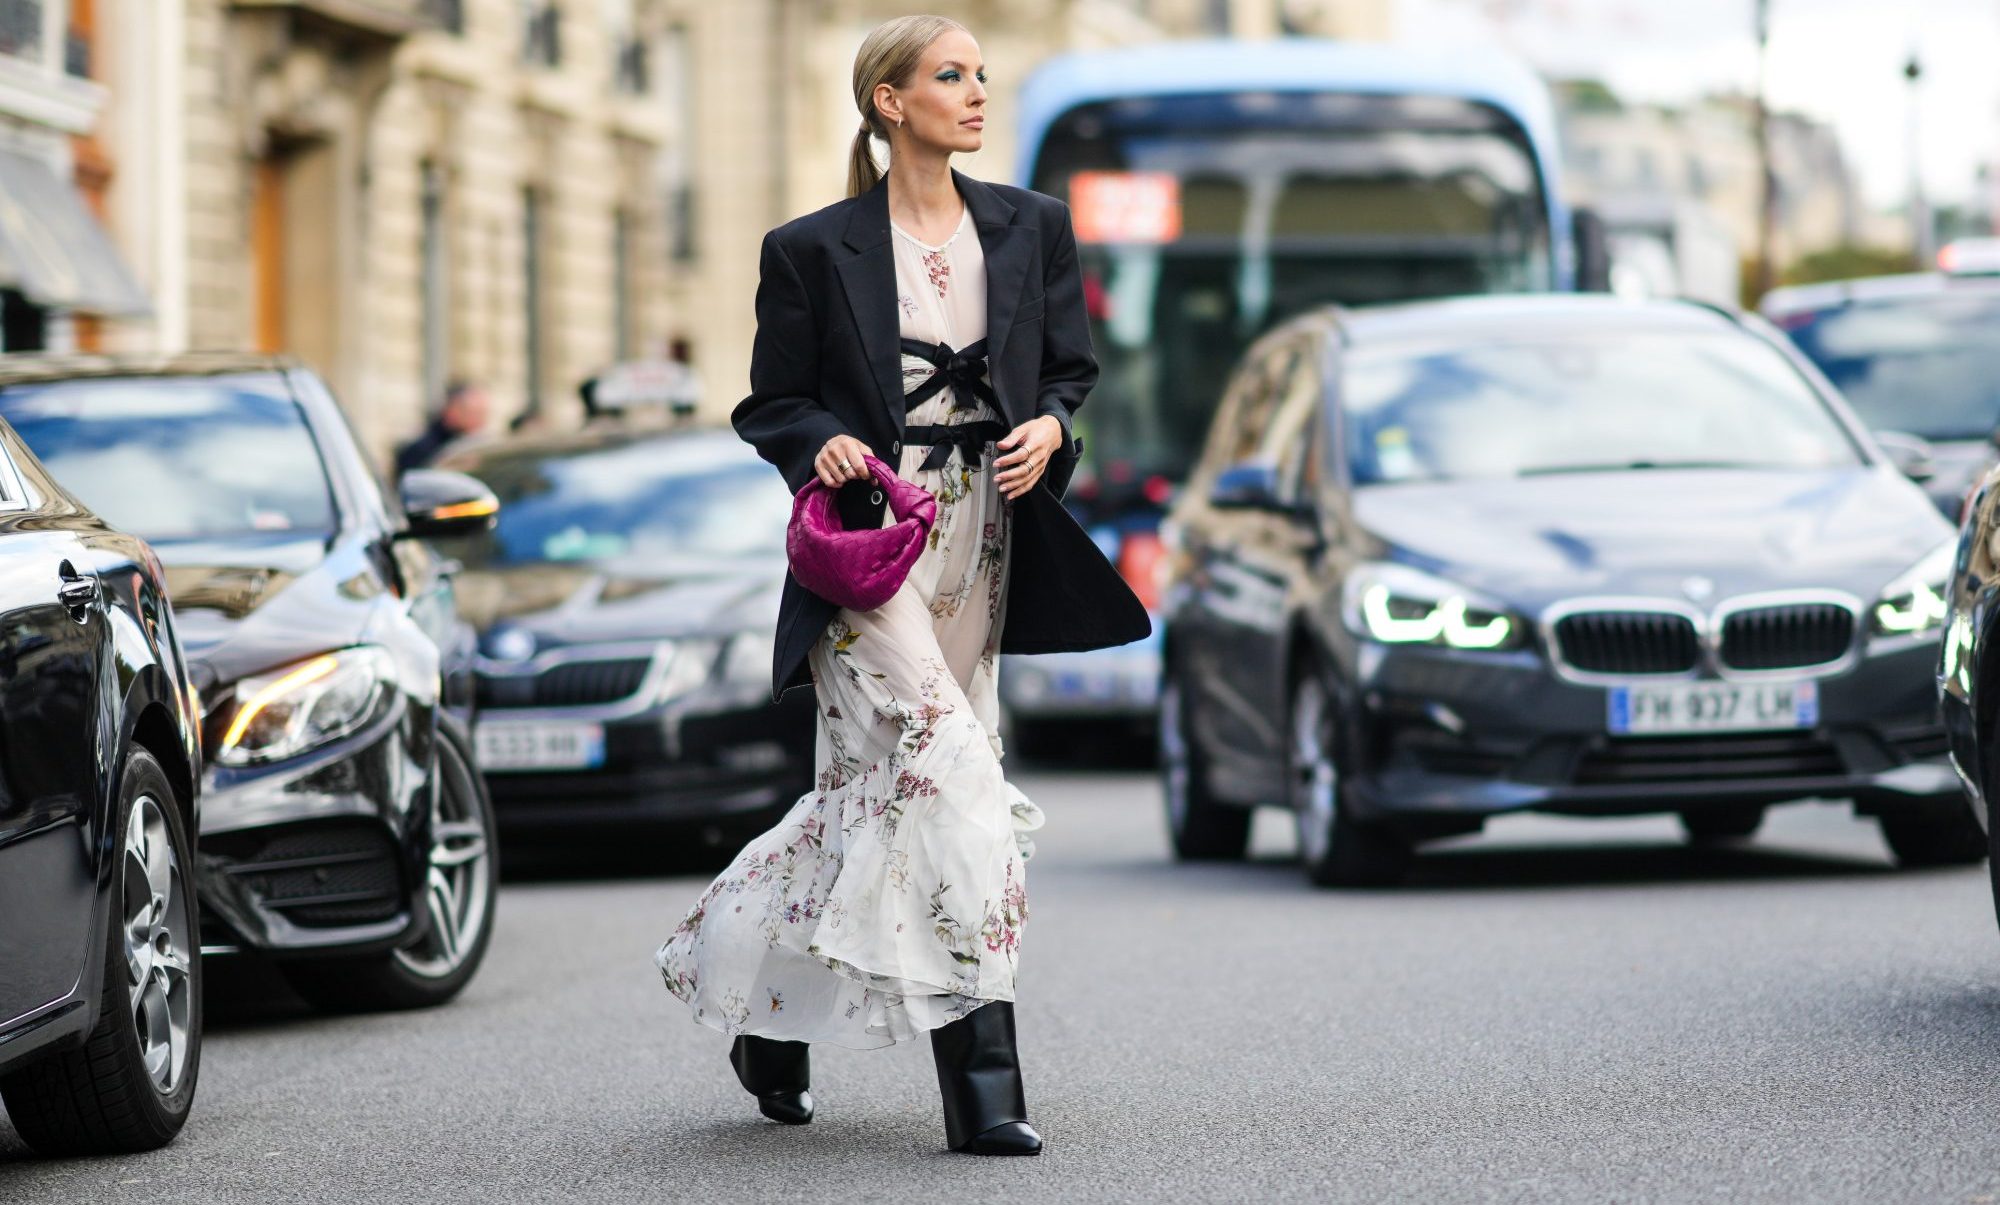 Leonie Hanne: Τα street style looks της στον fashion month είναι για (άμεση!) αντιγραφή